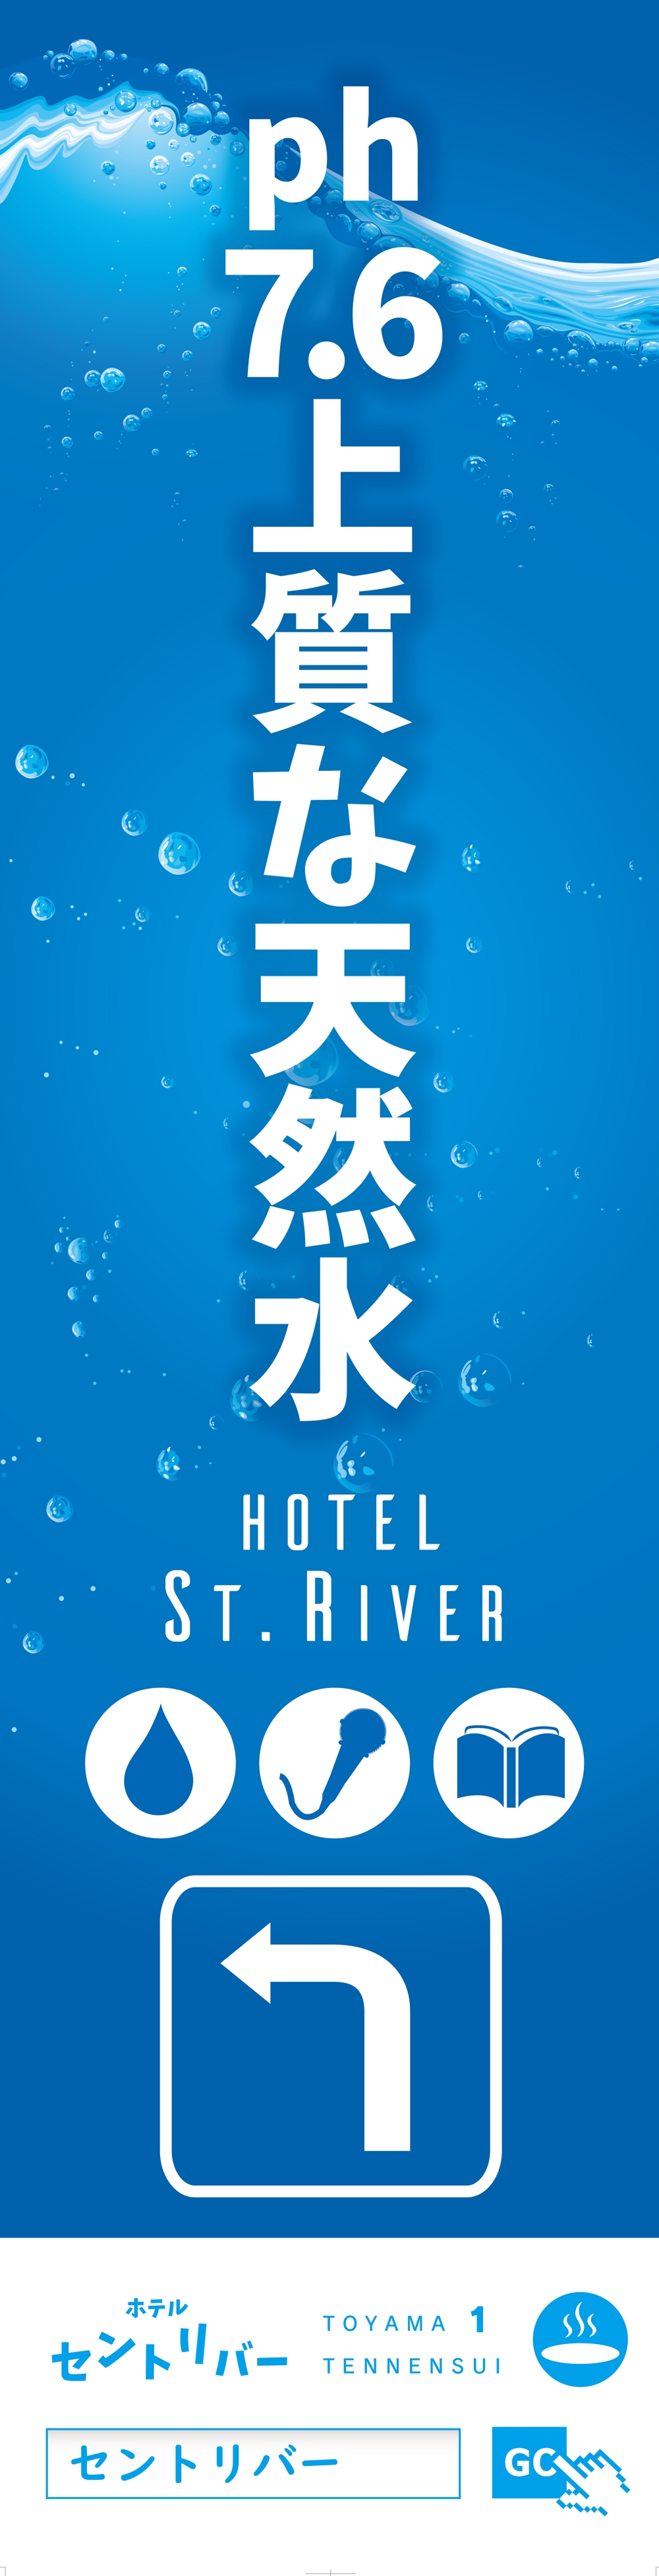 レジャーホテルの電柱広告のデザイン